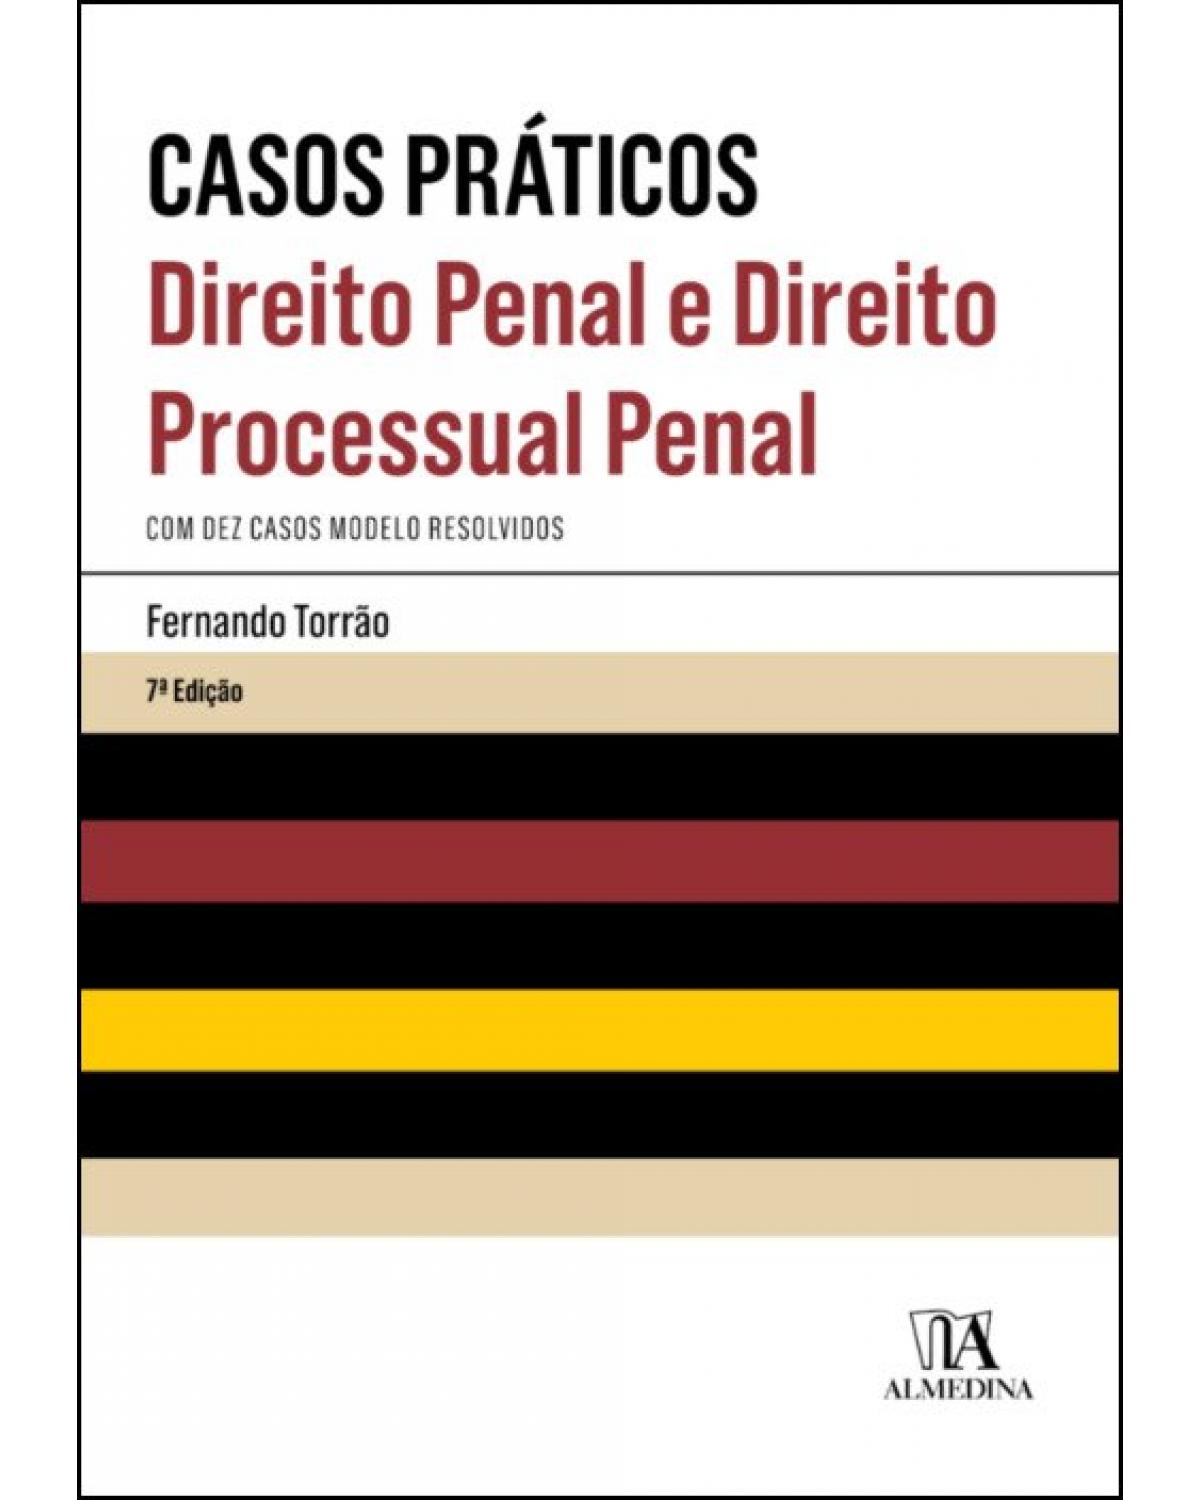 Casos práticos de direito penal e direito processual penal - 7ª Edição | 2019